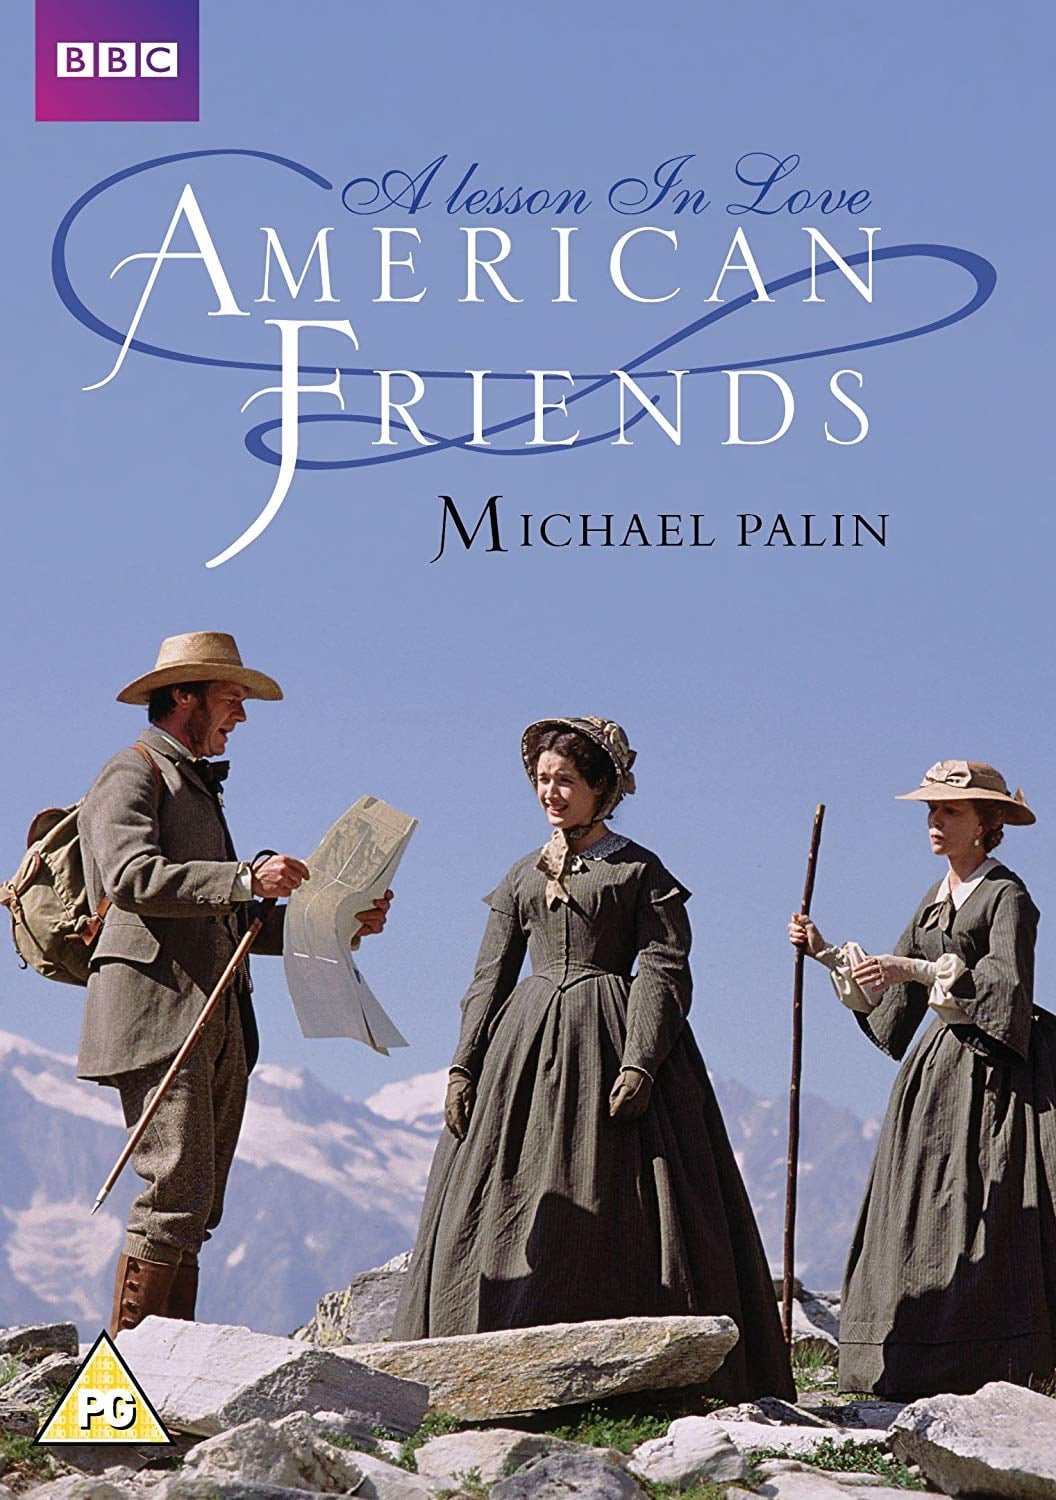 American Friends (1991)